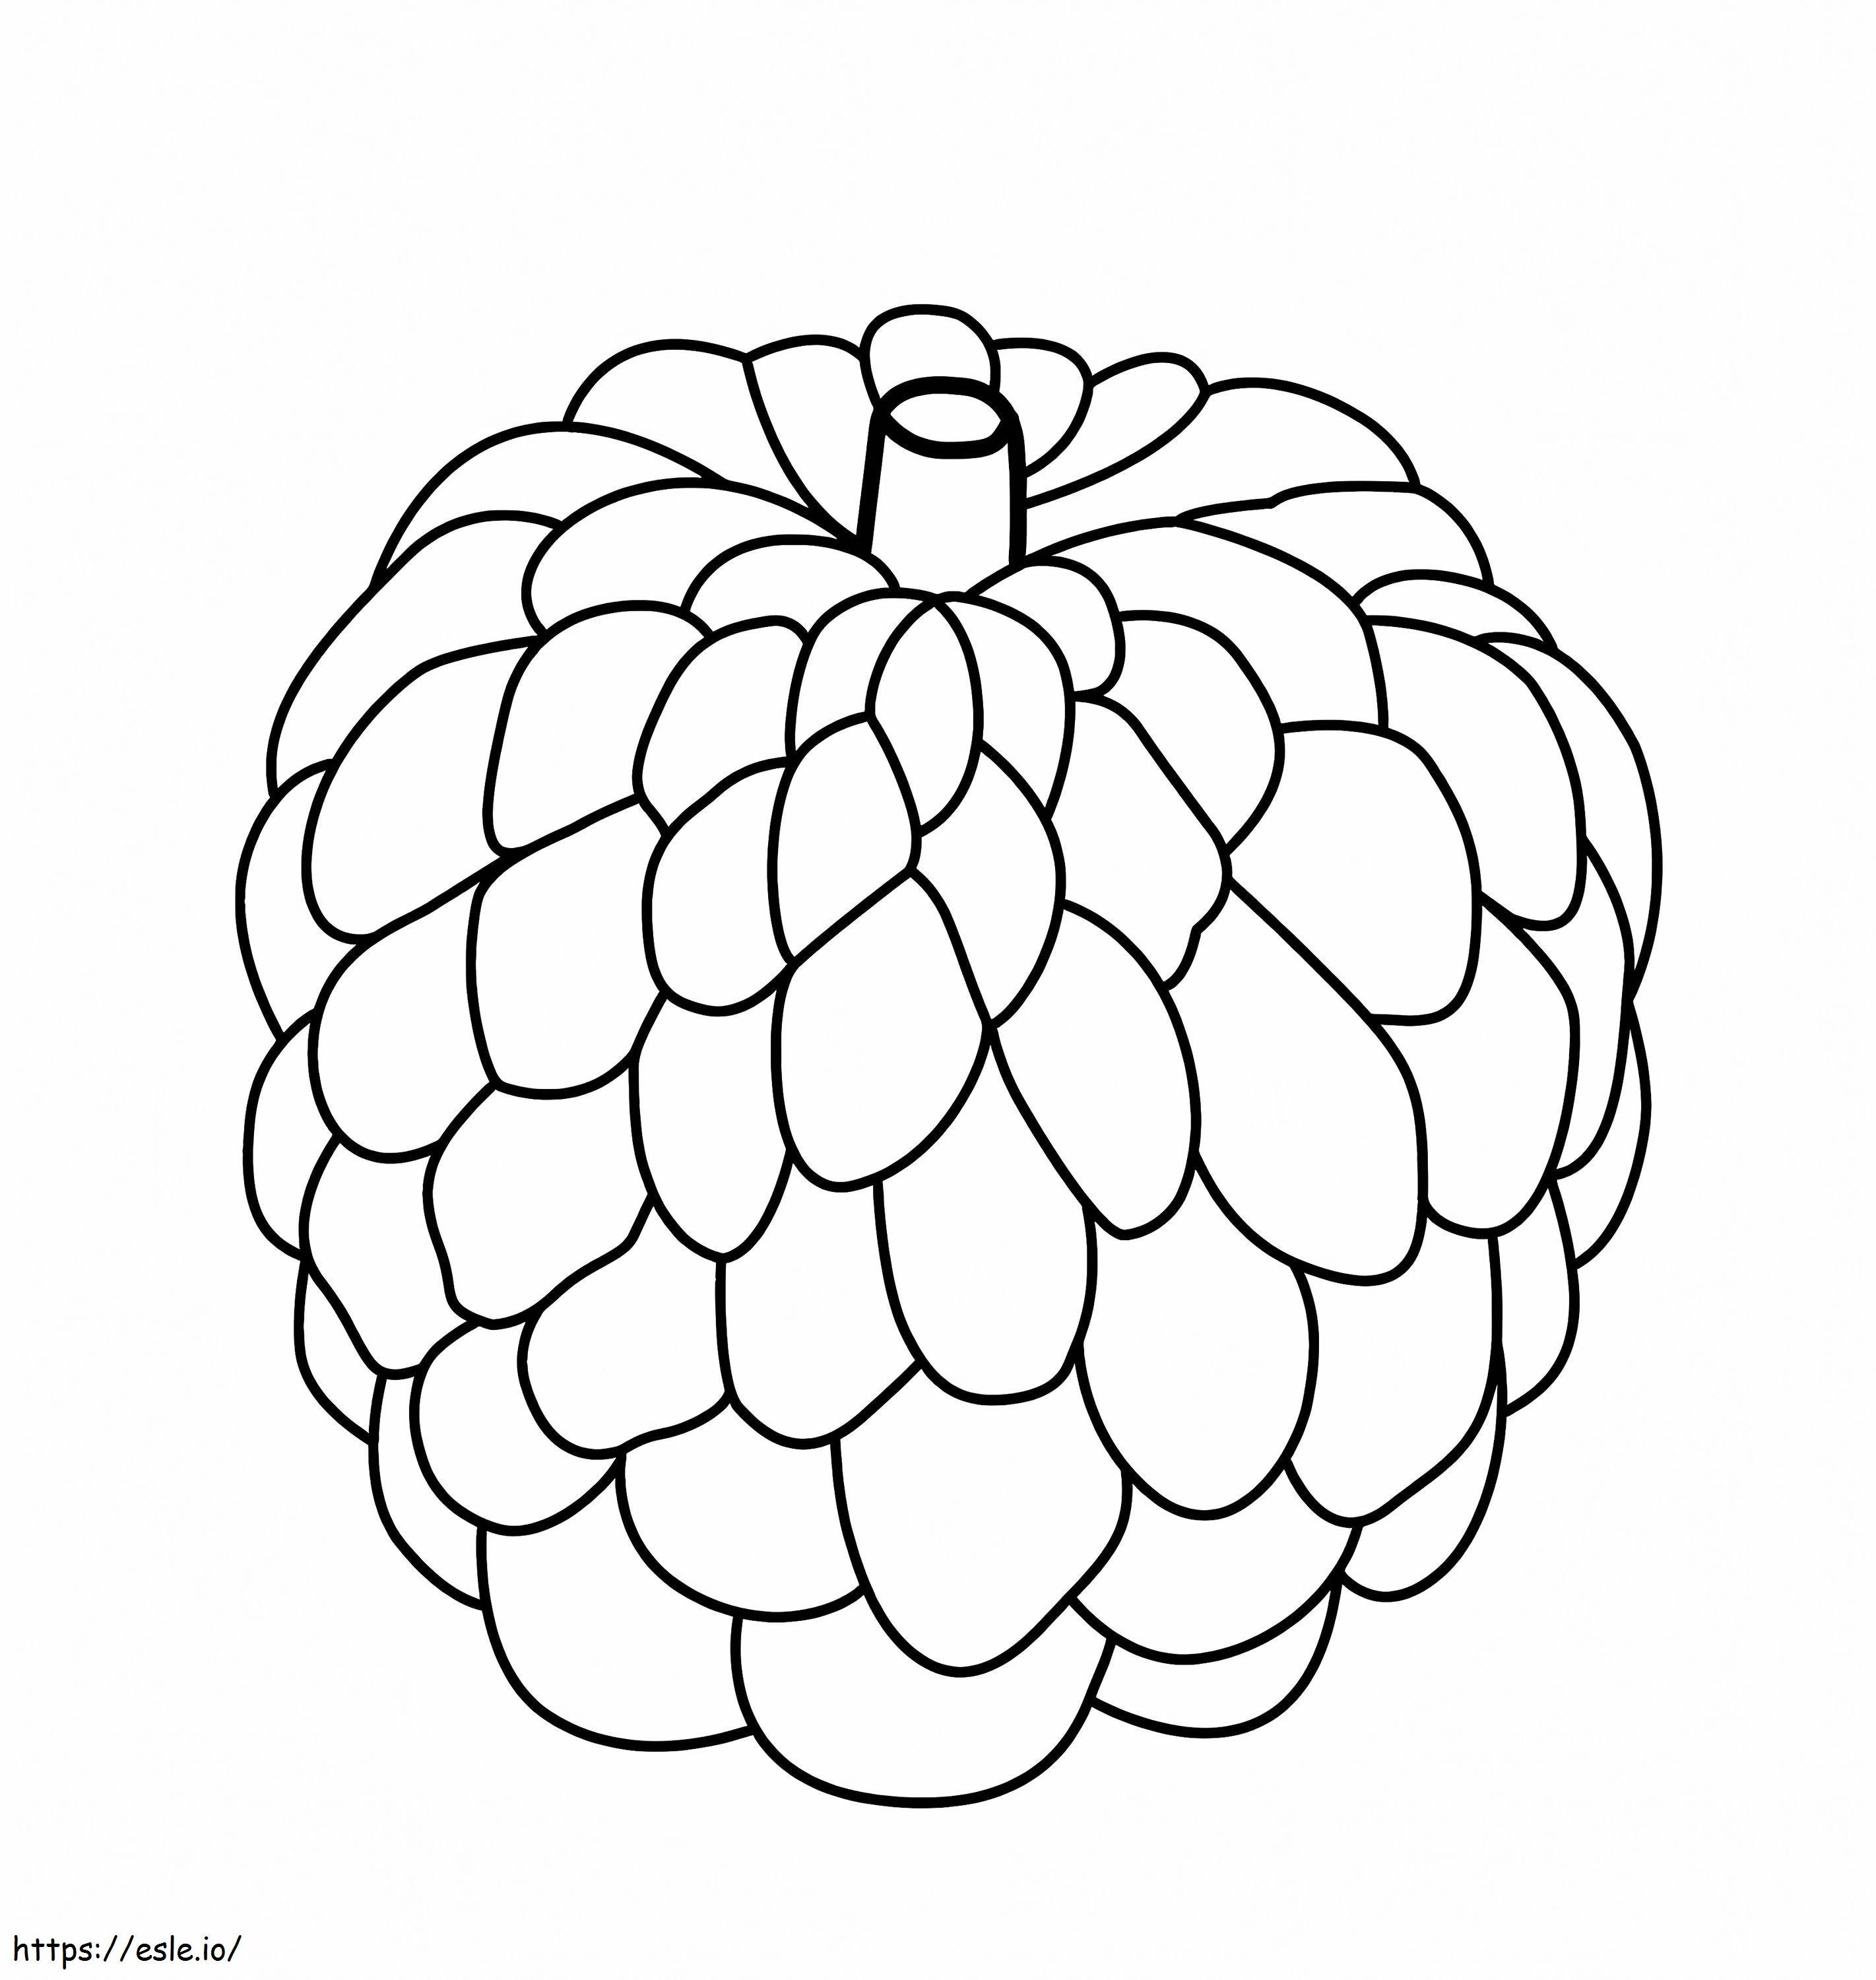  Jabłko z kremem A4 kolorowanka